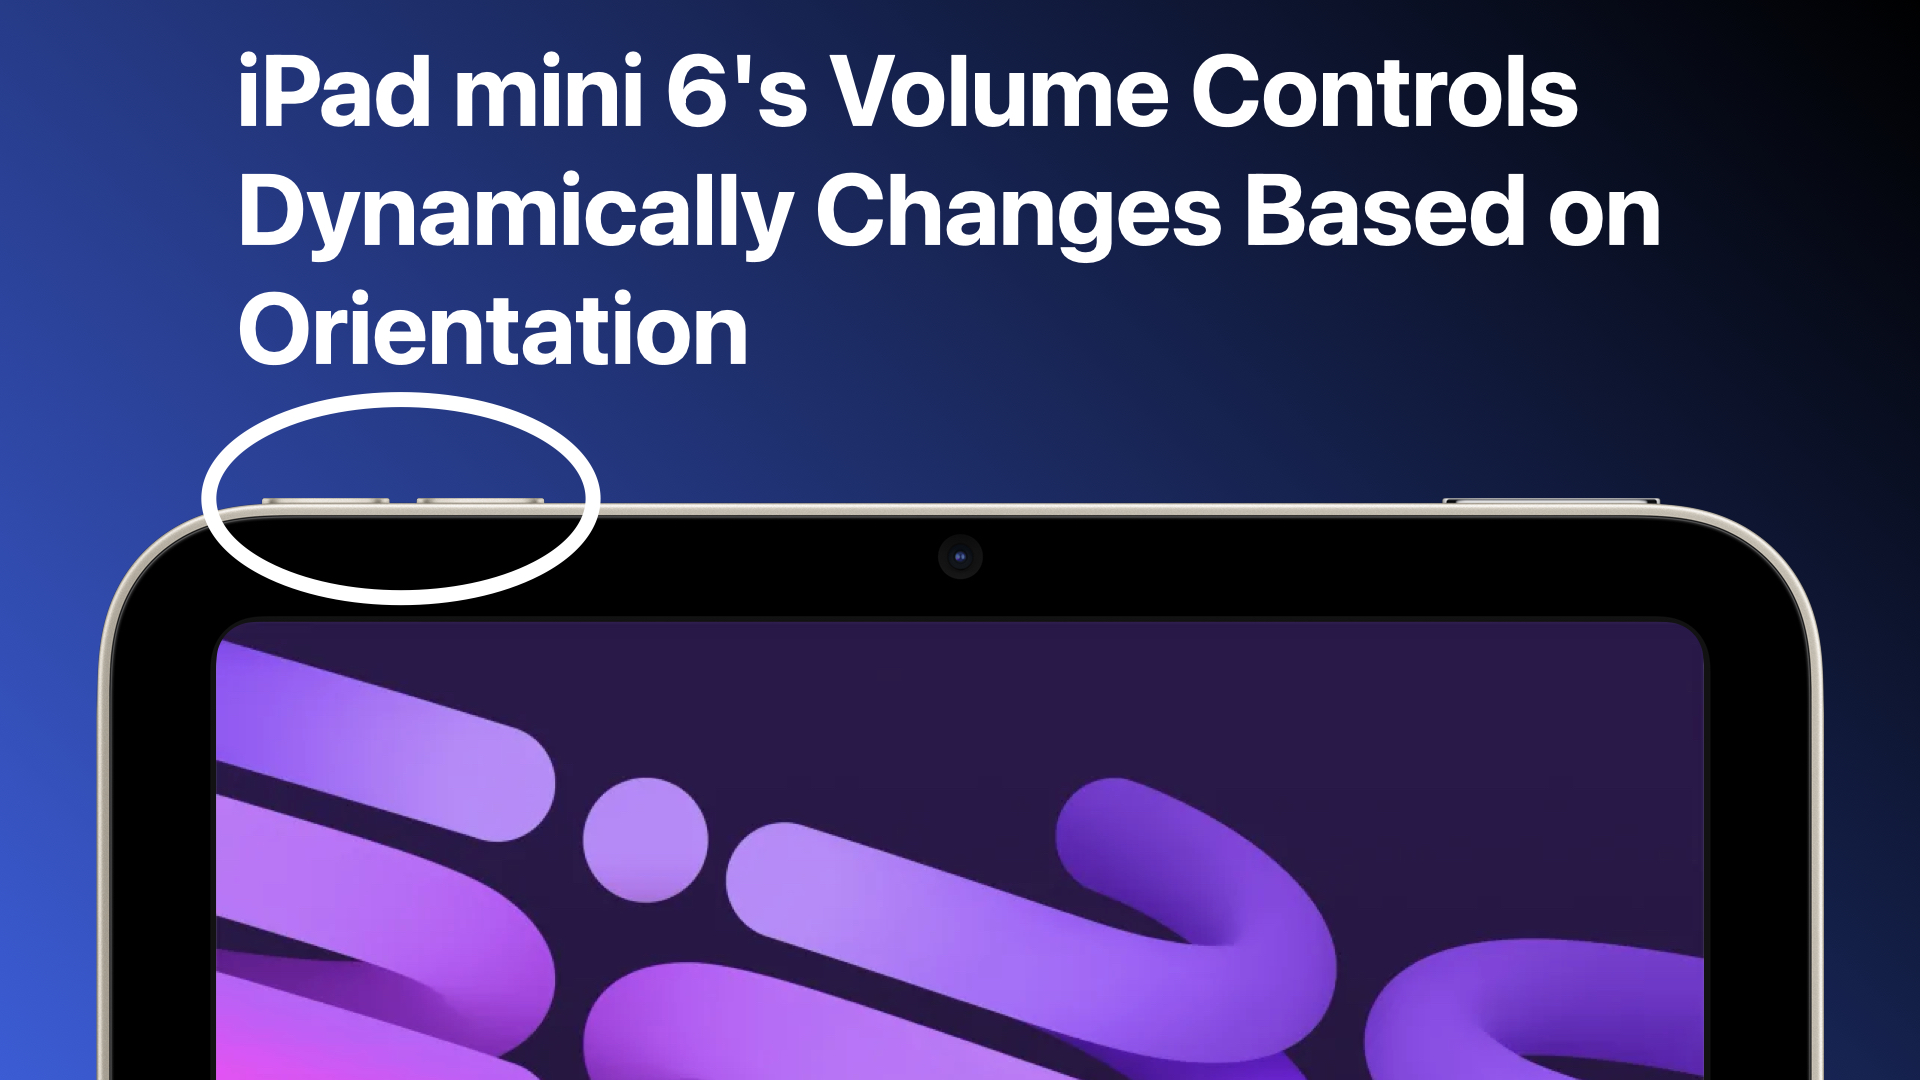 Los controles de volumen del iPad mini 6 cambian dinámicamente según la orientación